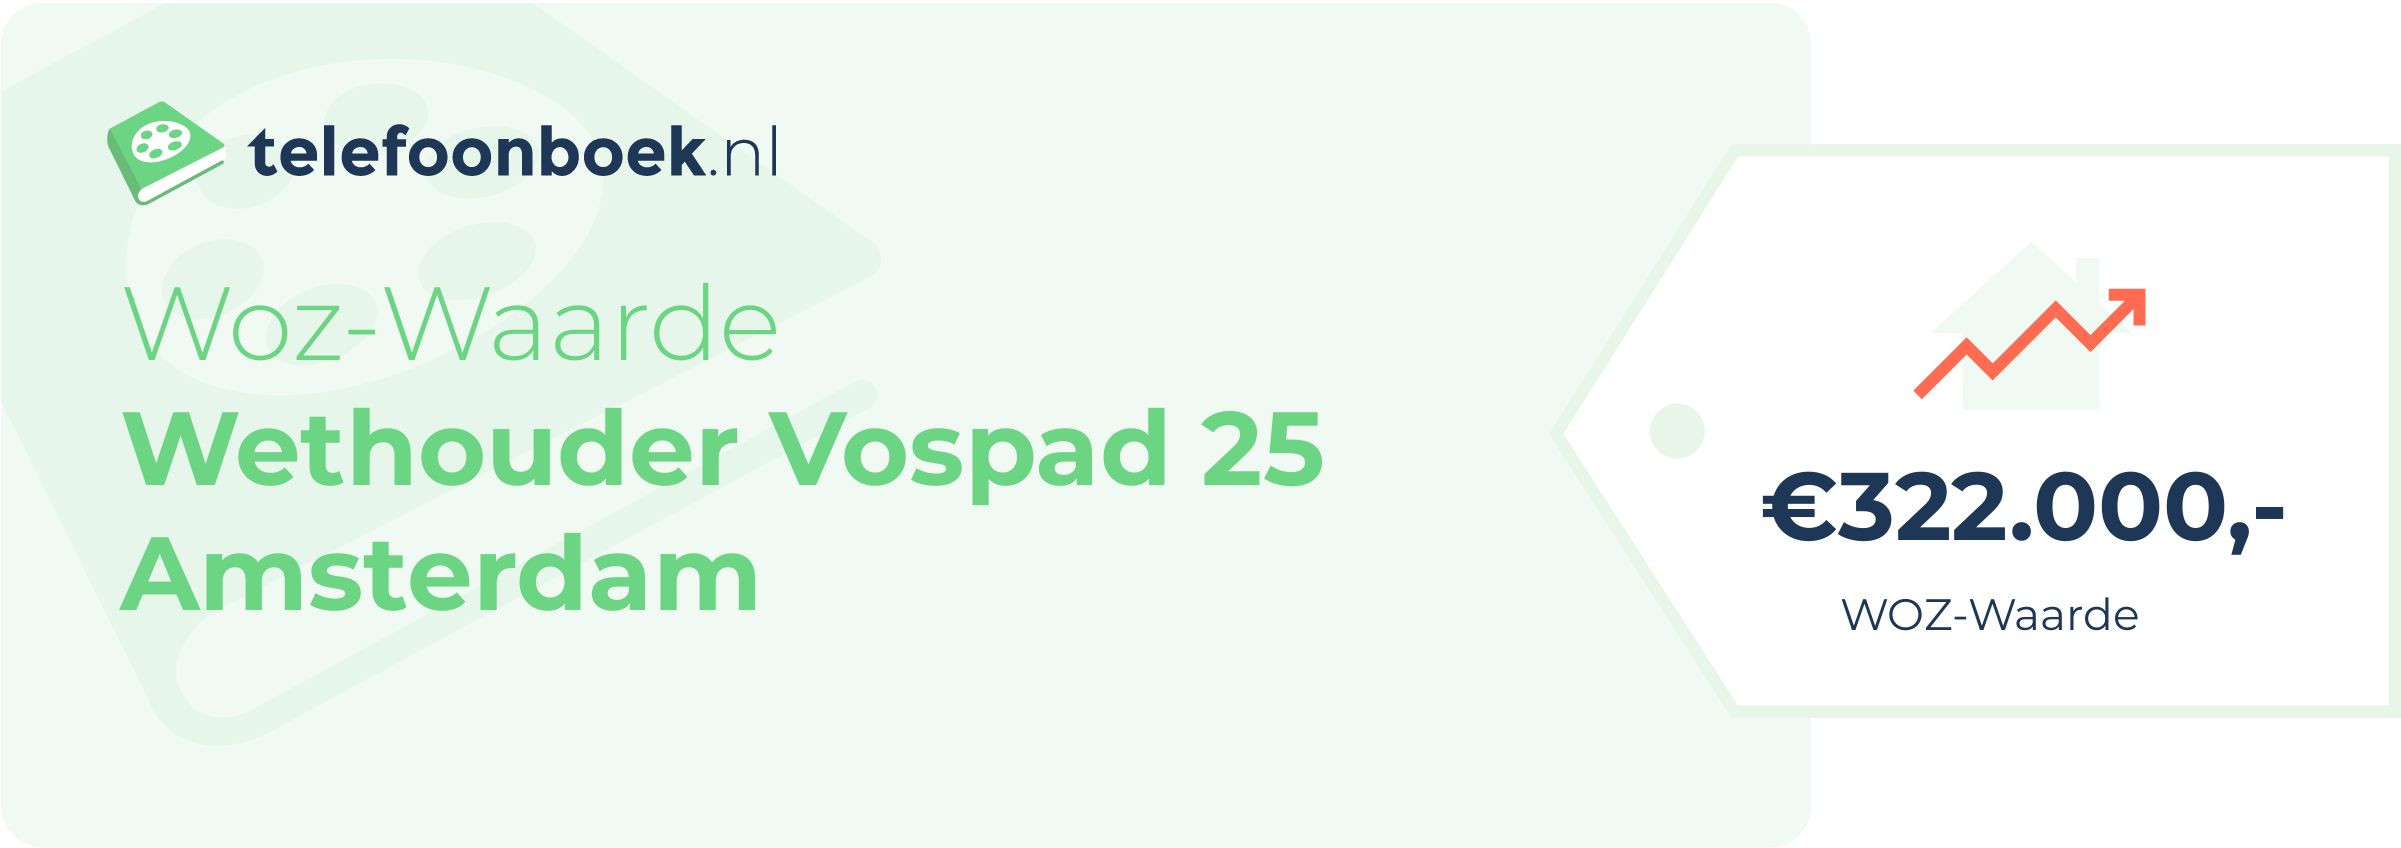 WOZ-waarde Wethouder Vospad 25 Amsterdam